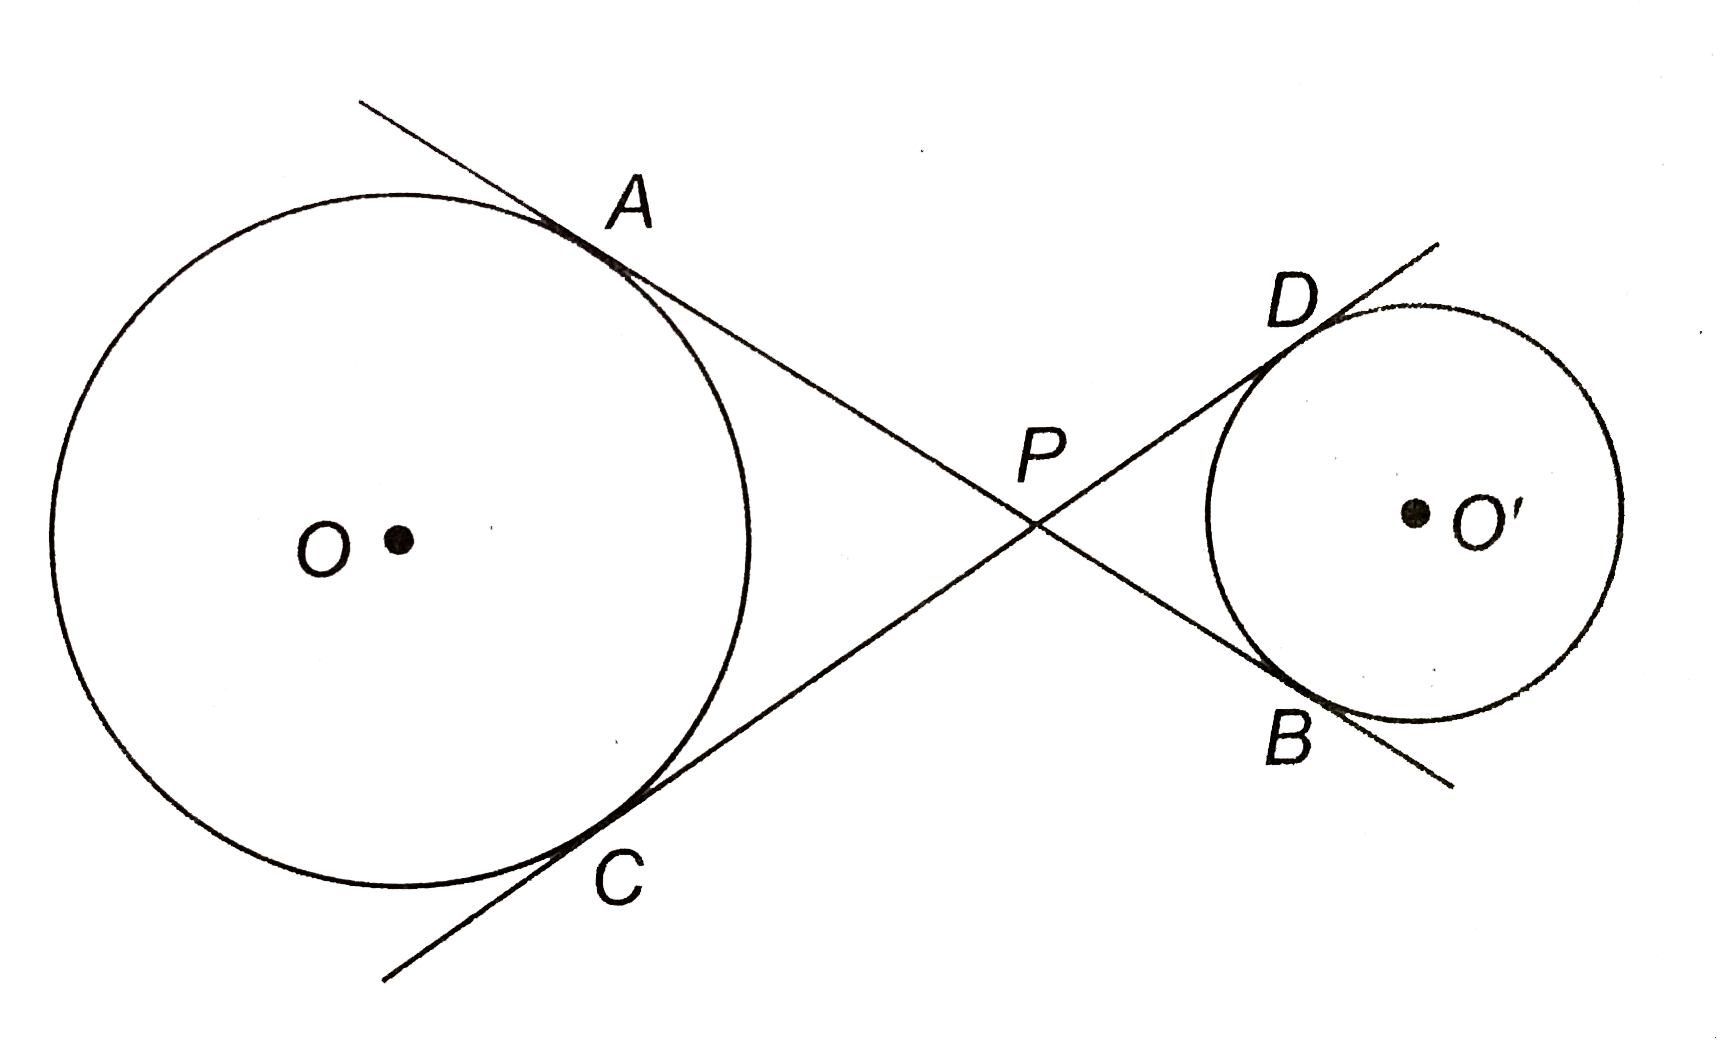 संलग्न चित्र में, दो वृत्तों की उभयनिष्ठ स्पर्श रेखायें AB और CD एक-दूसरे को P पर प्रतिच्छेद करती है। सिद्ध कीजिए कि AB=CD.